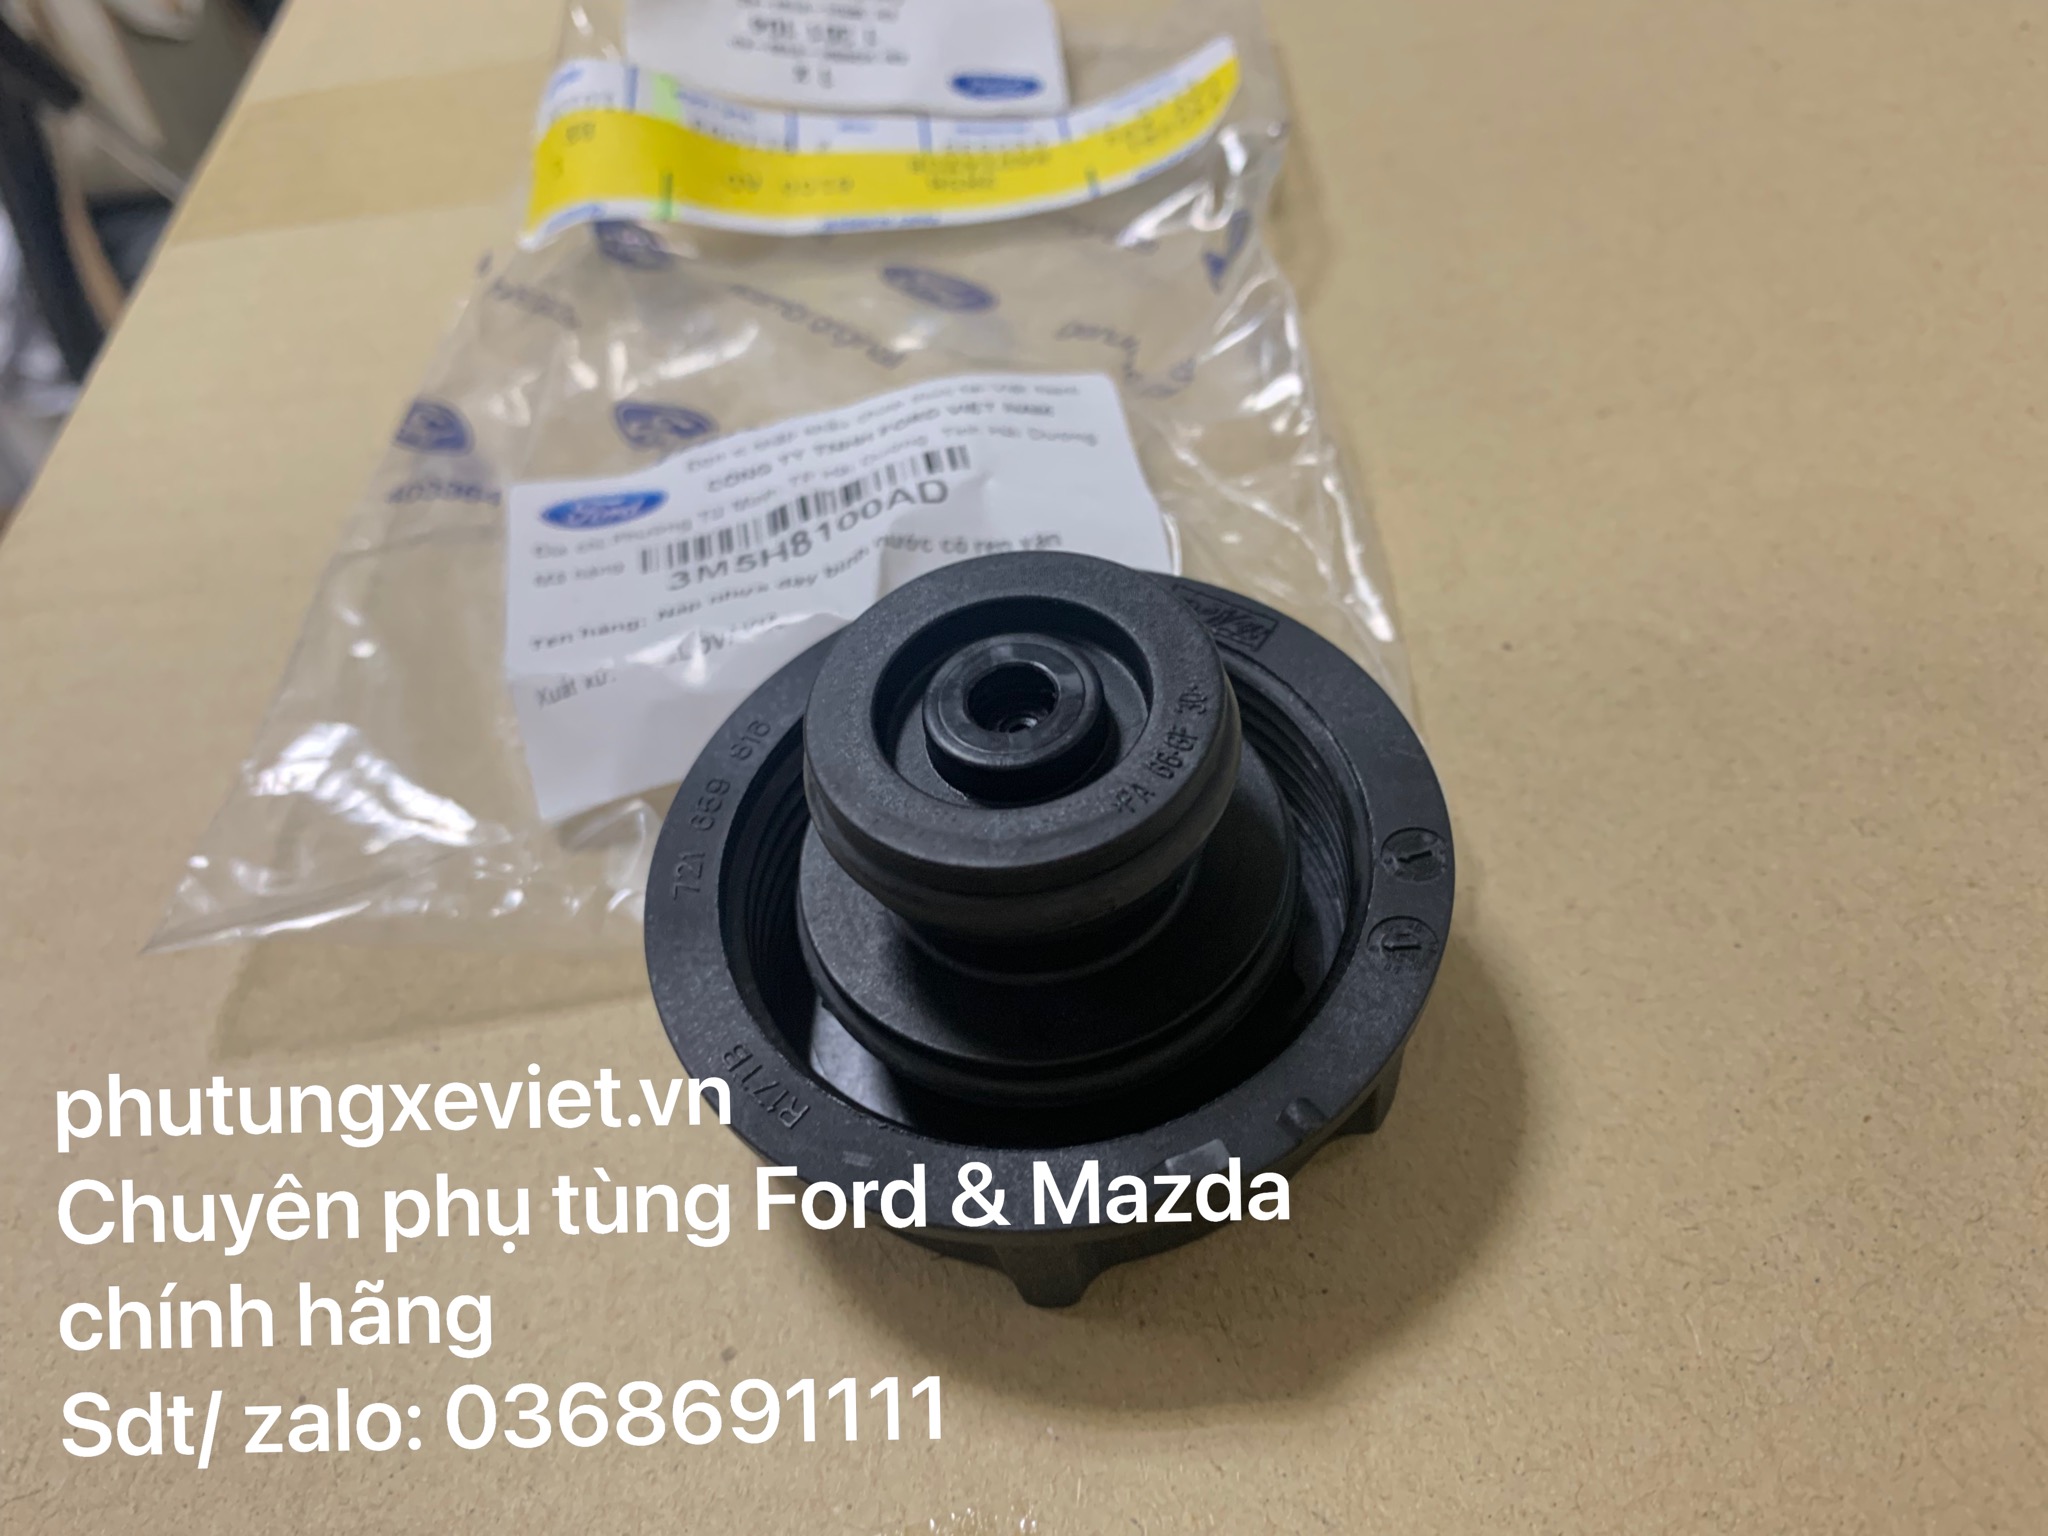 Nắp bình nước phụ Ford Focus 1.8 2.0 3M5H8100AD3